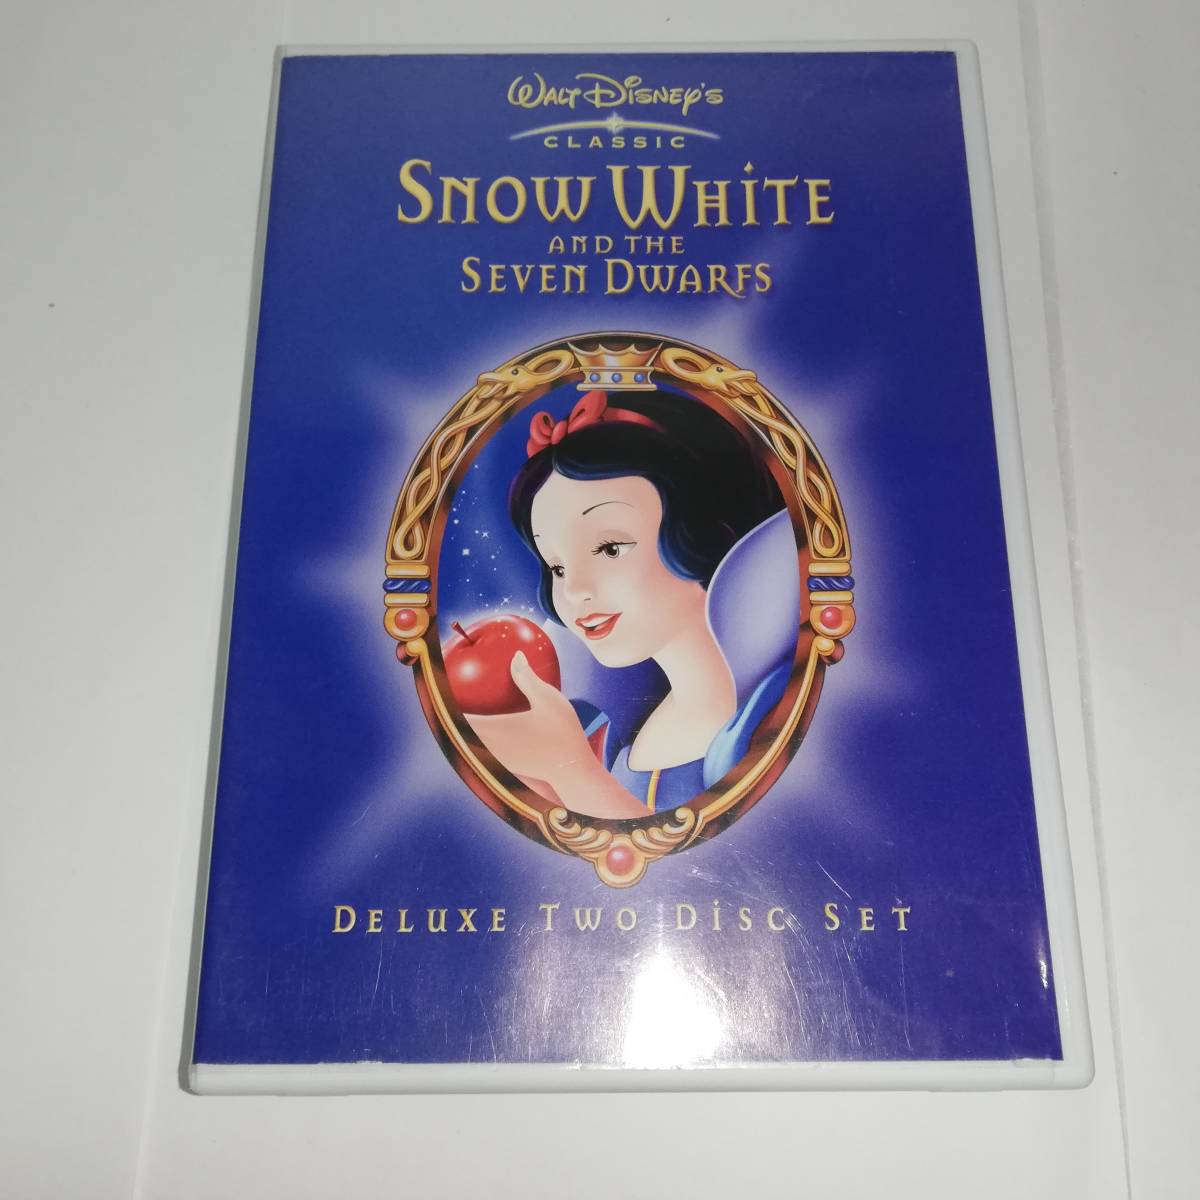 ◎白雪姫 SNOW WHITE AND THE SEVEN DWARFS　DELUXE TWO Disc SET ◎セル版 DVD2枚組◎デラックス版◎ディズニー クラシック◎送料無料